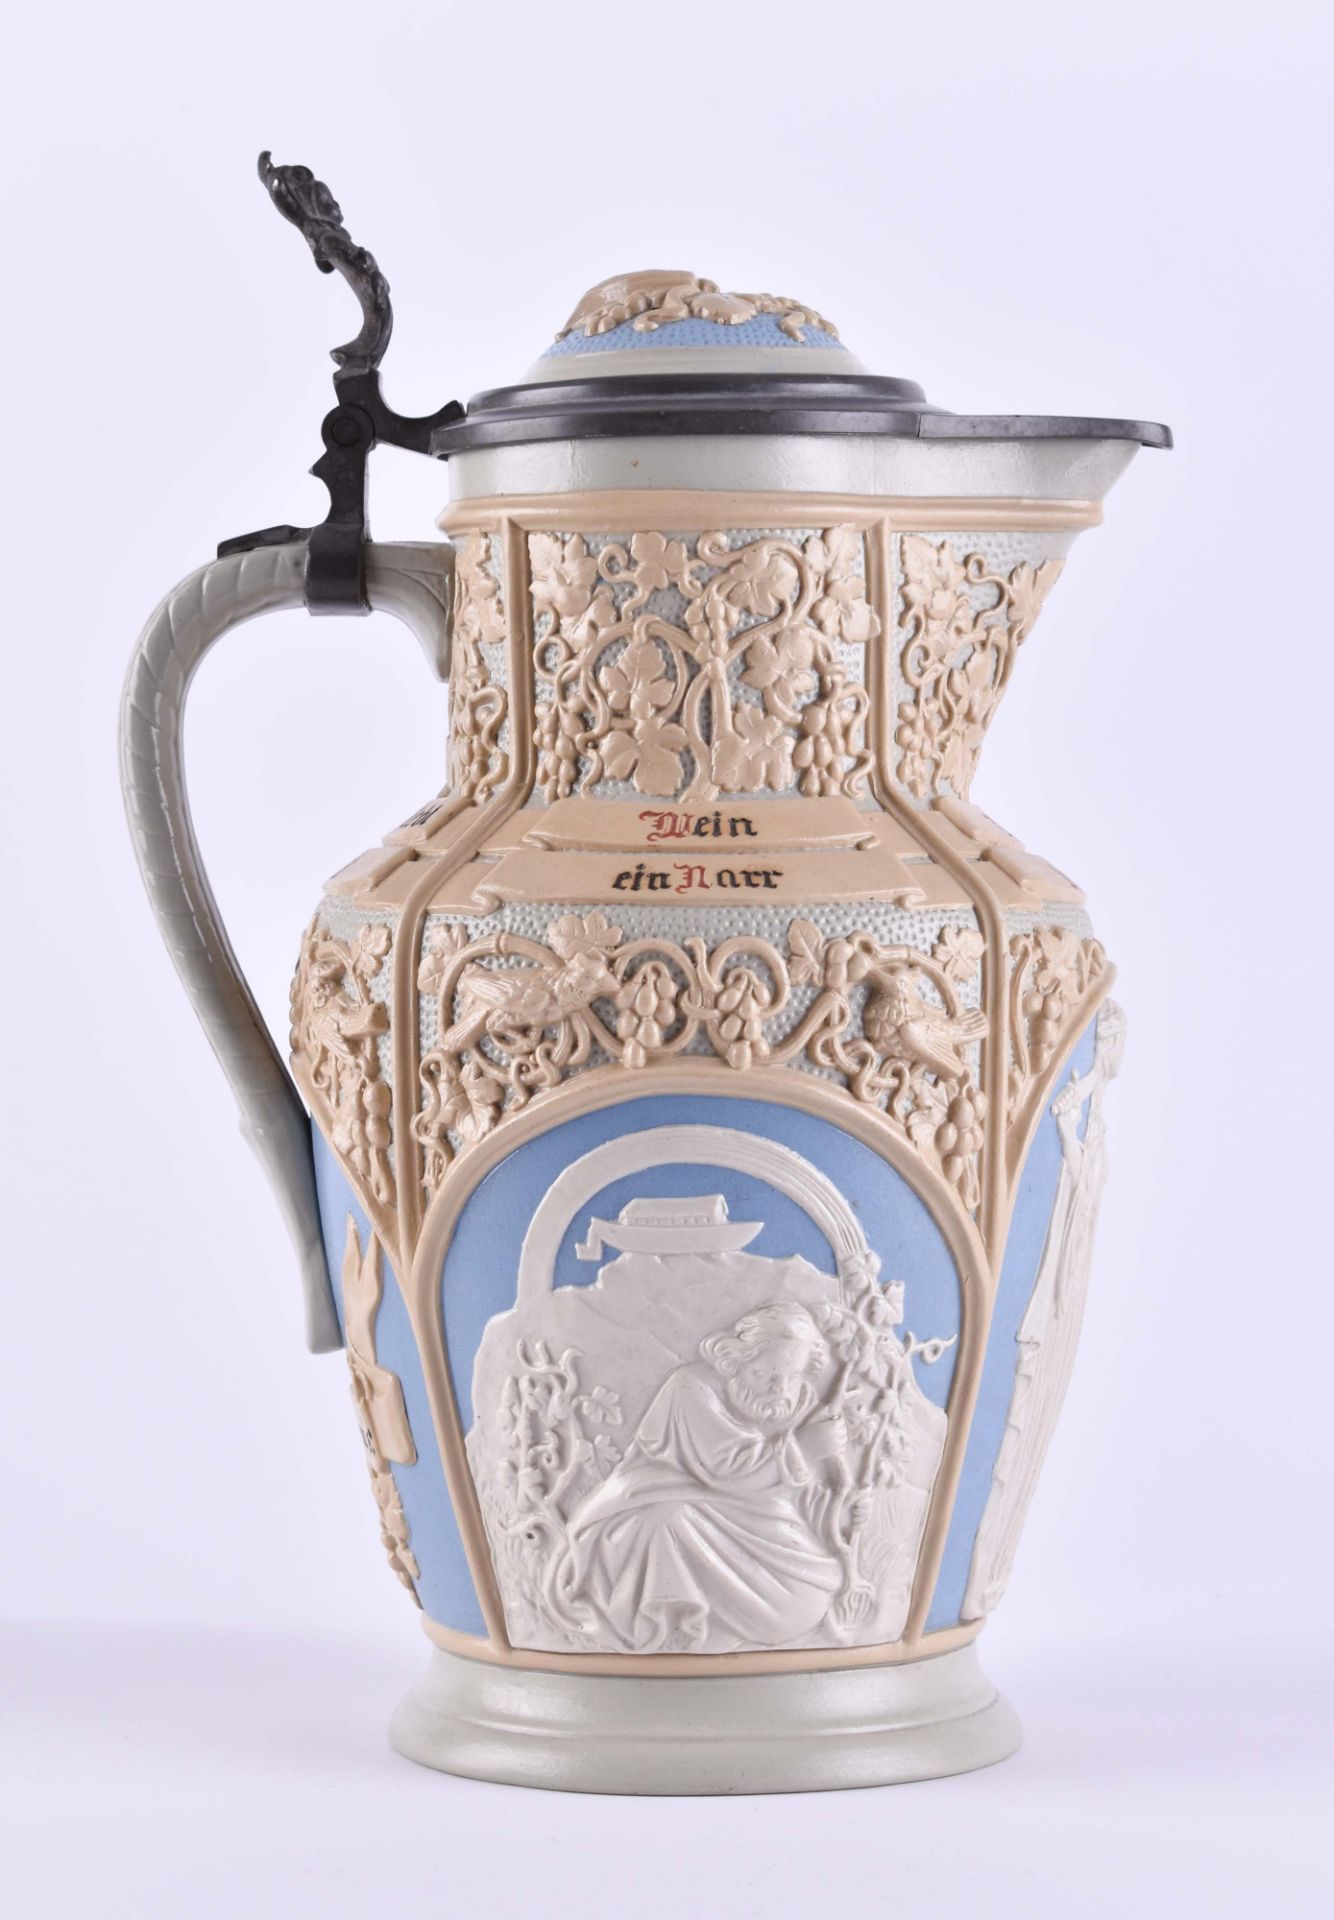 Villeroy & Boch Mettlach Weinkrug um 1890 / 1900Höhe 30 cm, Fassungsvermögen 2,5 lVilleroy &